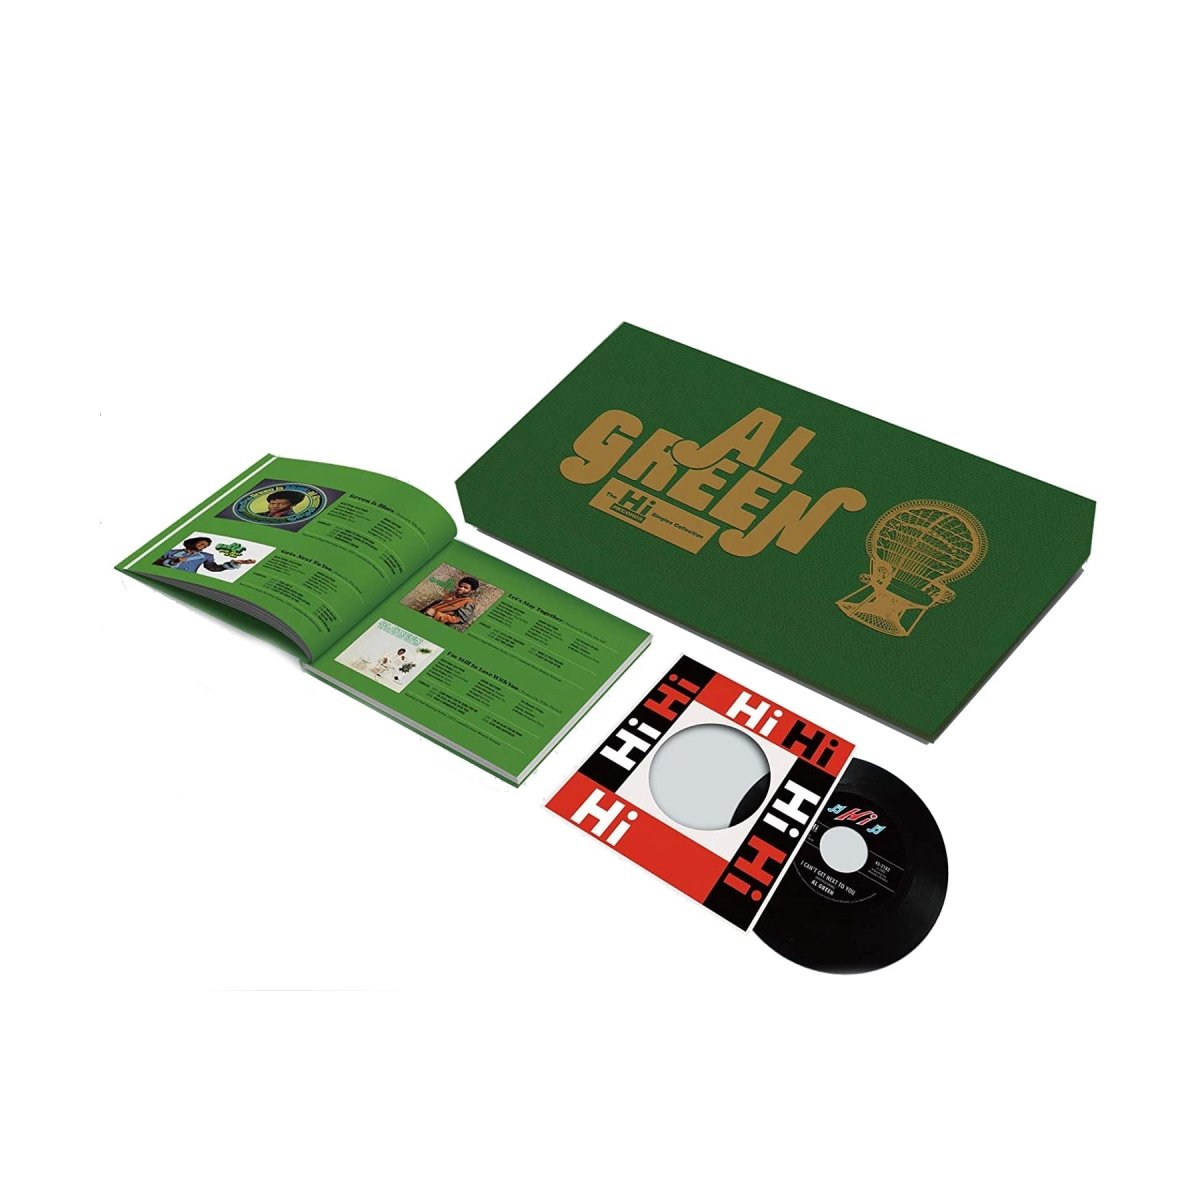 Al Green - The Hi Records Singles Collection 7" Box Set Vinyl